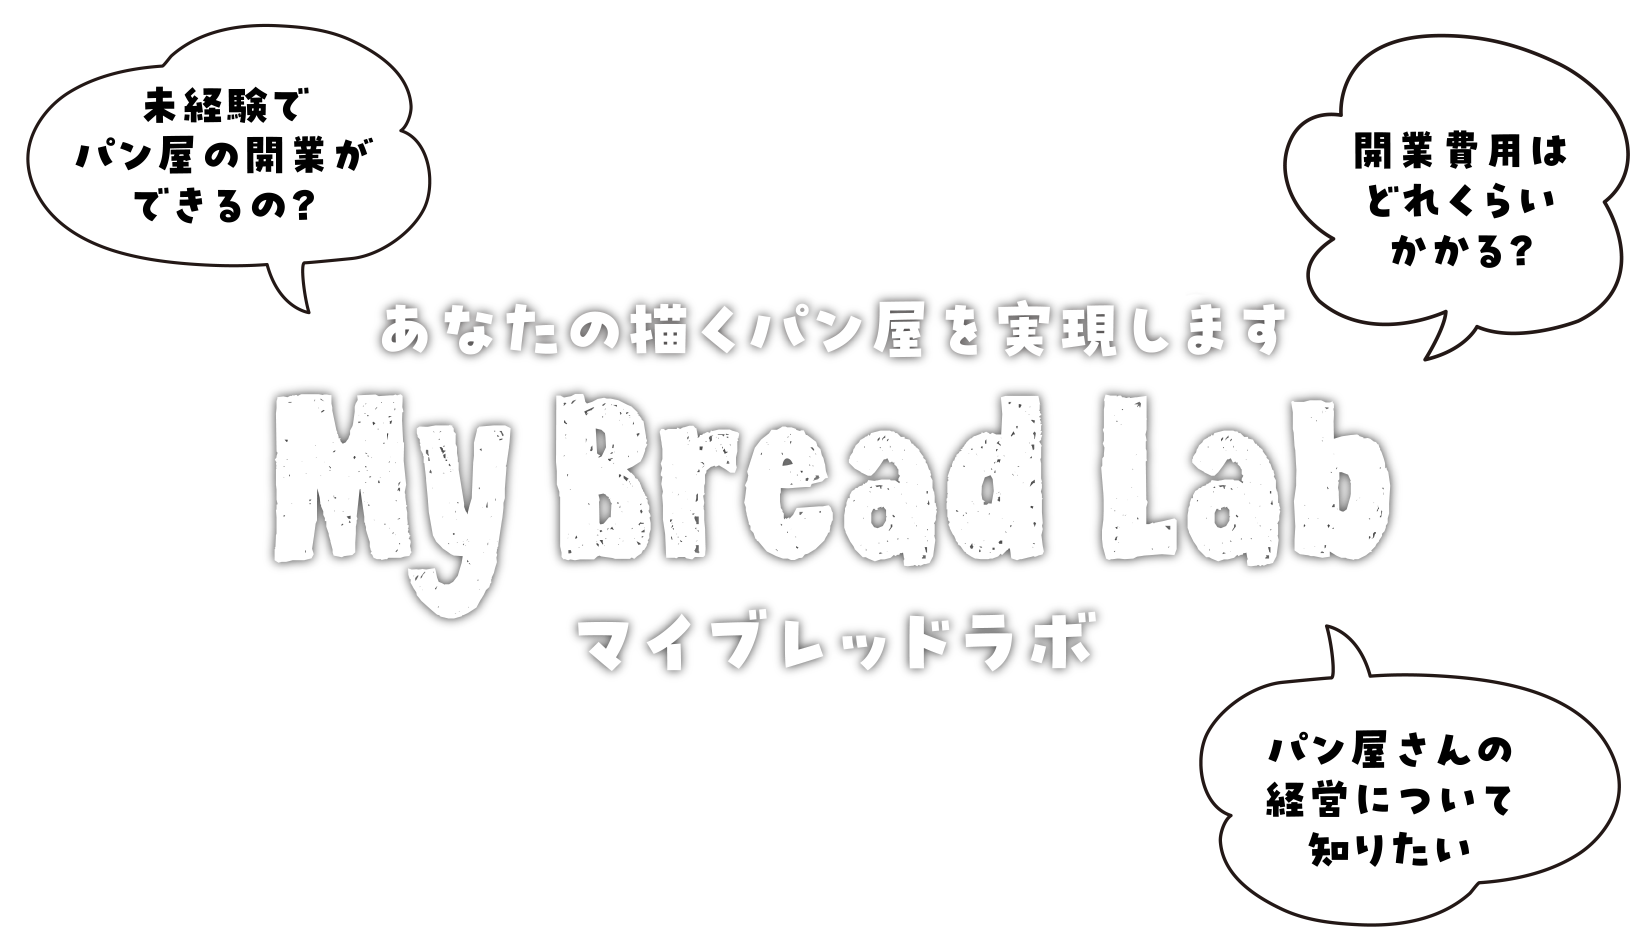 あなたの描くパン屋を実現します「My Bread Lab マイブレッドラボ」。未経験でパン屋の開業ができるの？開業費用はどれくらいかかる？パン屋さんの経営について知りたい。